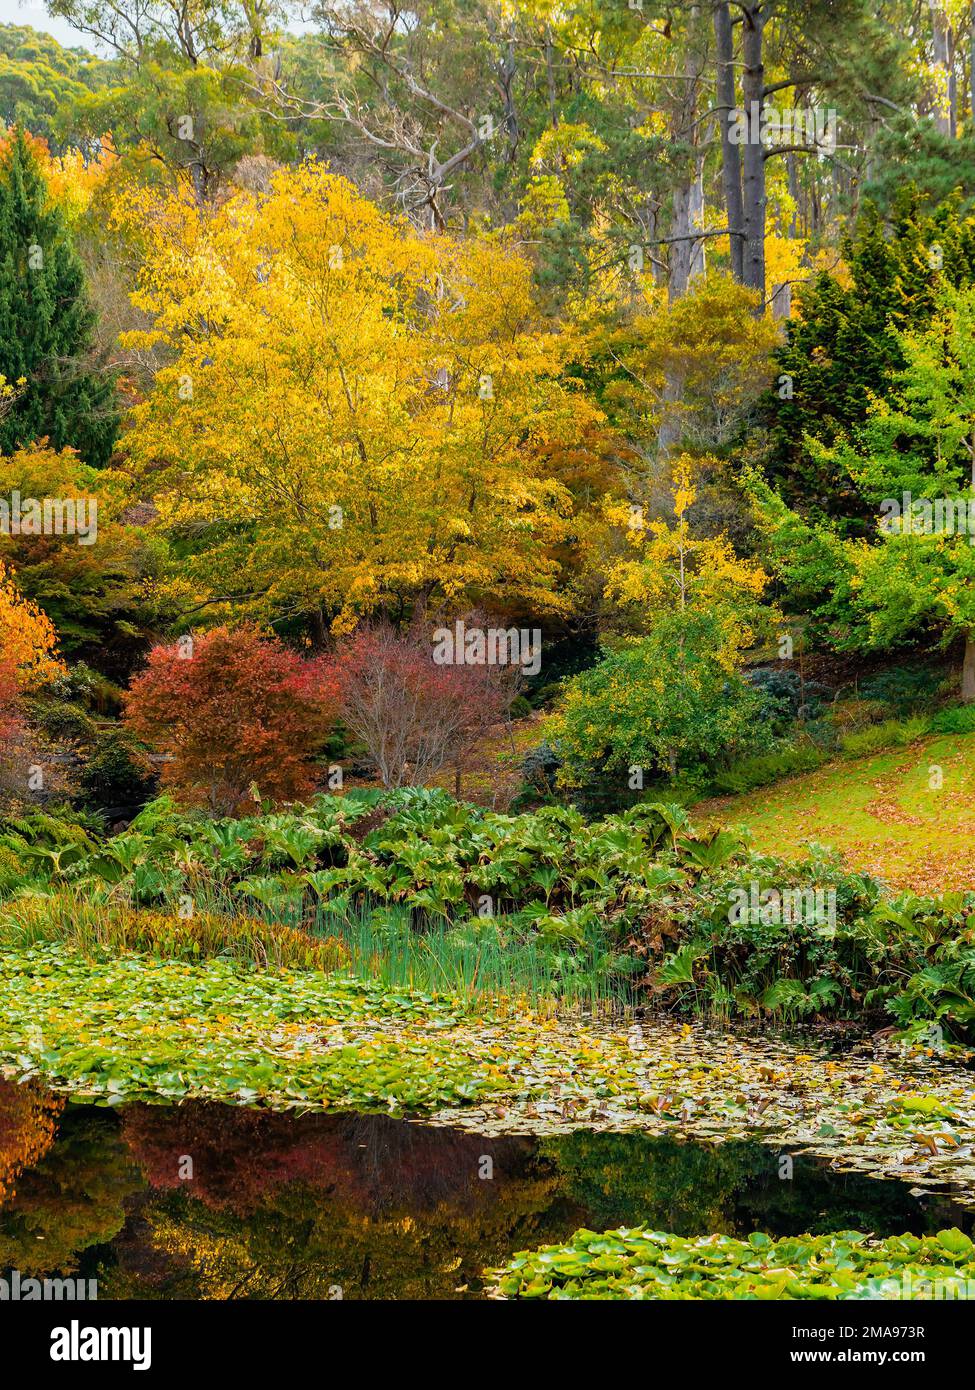 Parque público Mount Lofty en un día durante la temporada de otoño Foto de stock